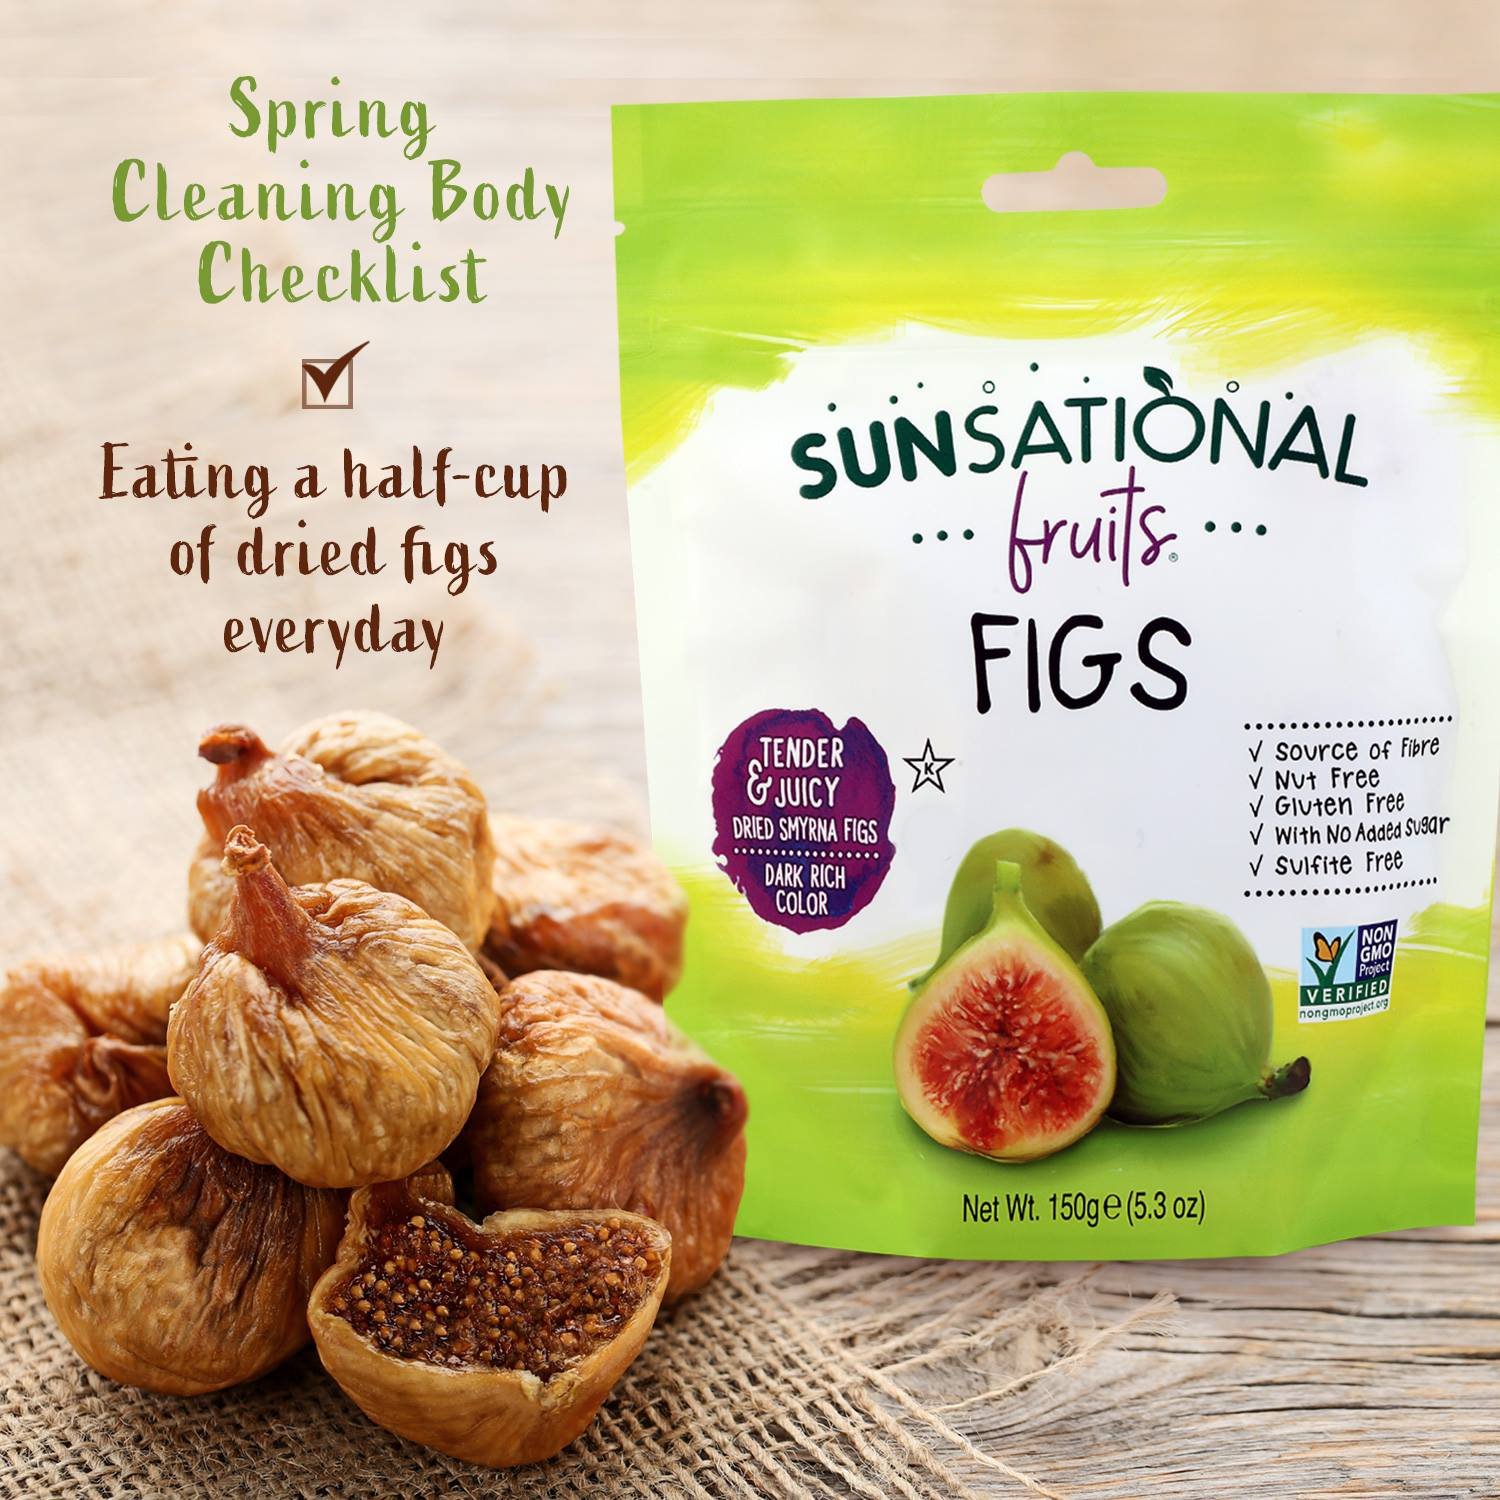 Quả Sung Sấy Khô (150g) - Sunsational Fruits Figs (150g) - không thêm đường, nhiều chất xơ, không chất bảo quản